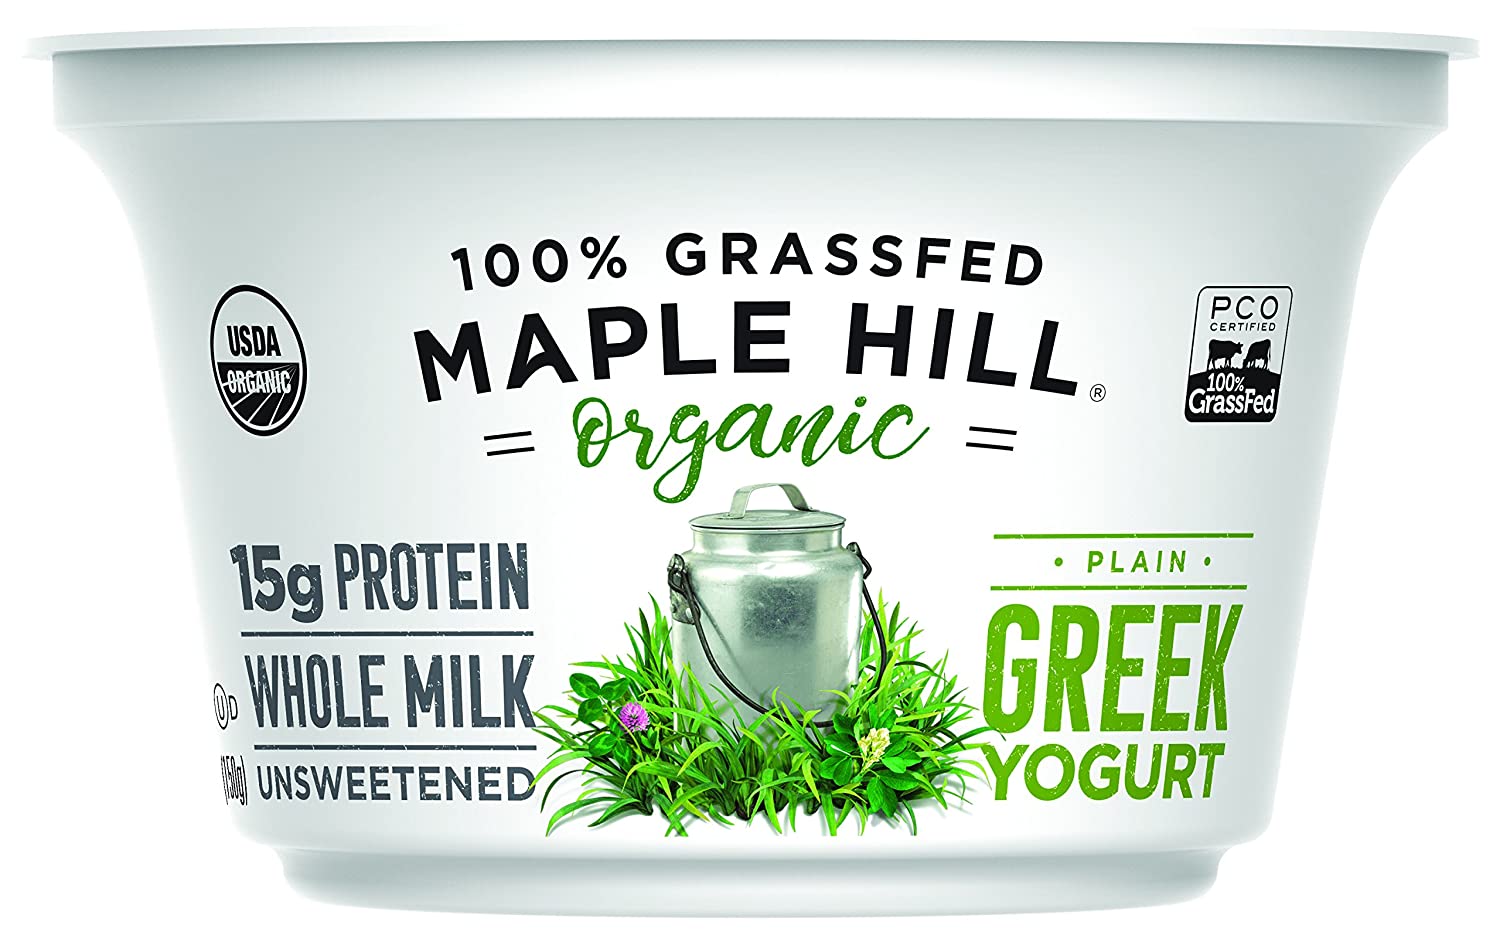 sugar free yogurt - Maple Hill Creamery 100% Grass-Fed Organic Greek Yoghurt